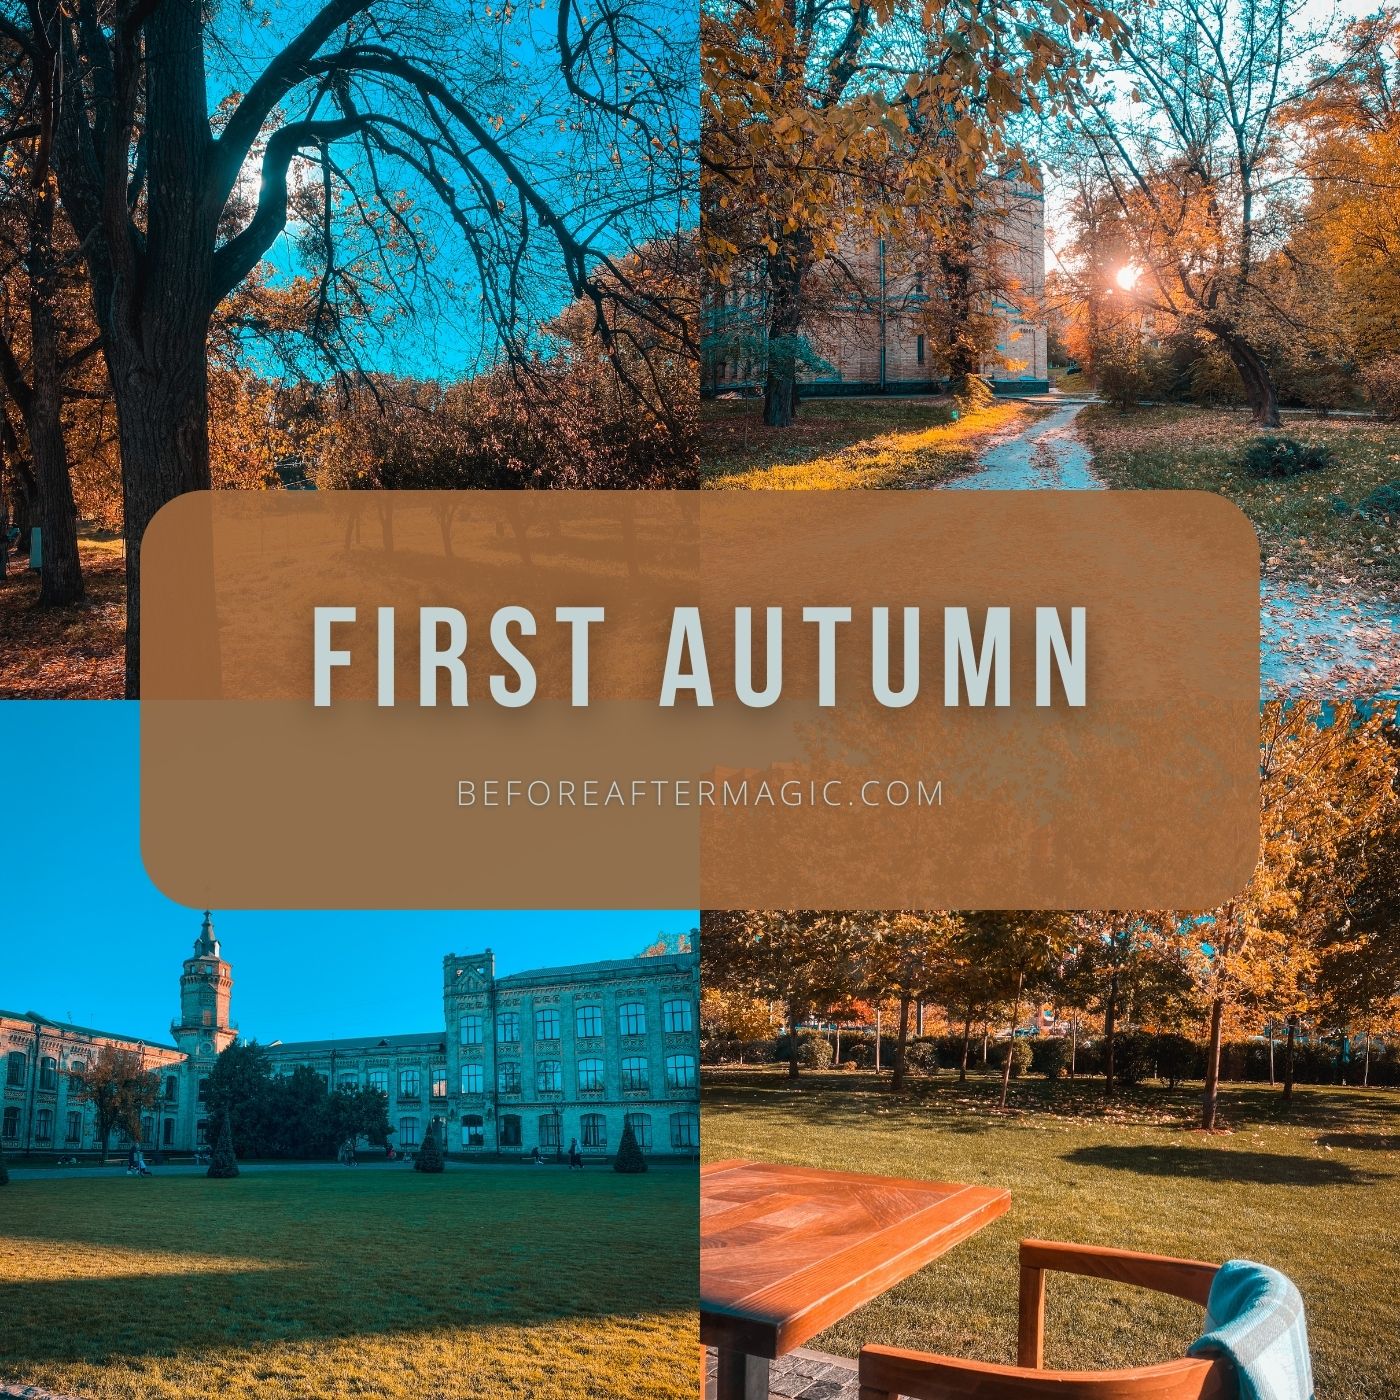 First autumn